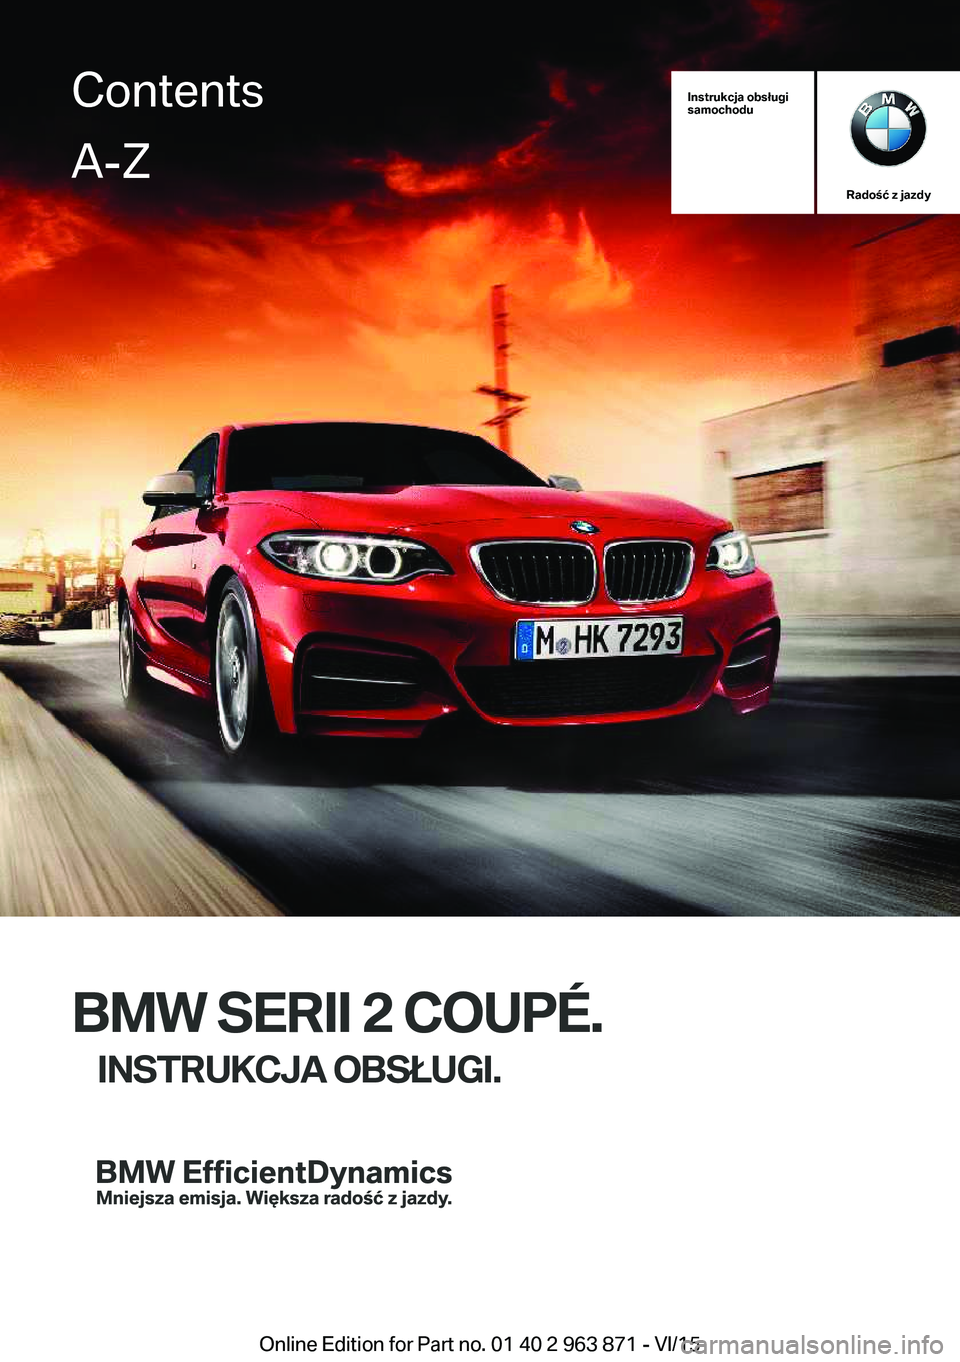 BMW 2 SERIES COUPE 2016  Instrukcja obsługi (in Polish) Instrukcja obsługi
samochodu
Radość z jazdy
BMW SERII 2 COUPÉ.
INSTRUKCJA OBSŁUGI.
ContentsA-Z
Online Edition for Part no. 01 40 2 963 871 - VI/15   